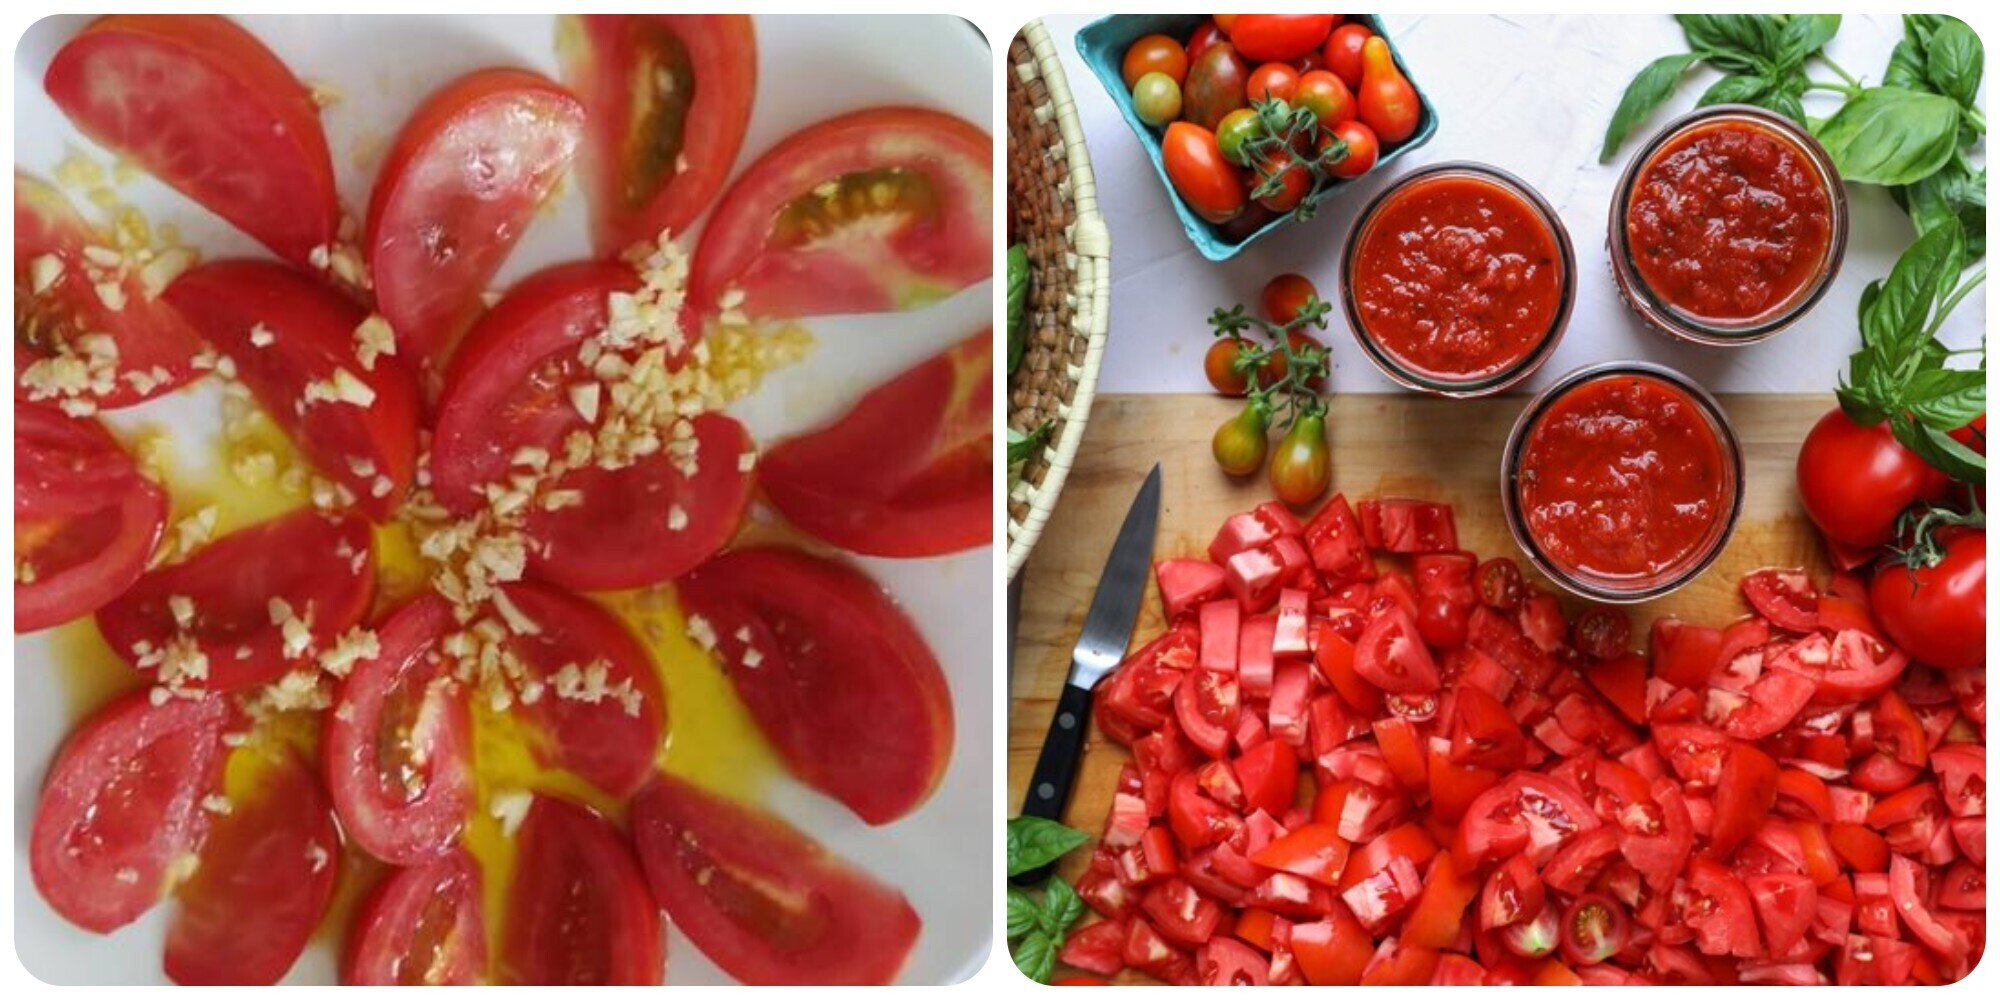 Cà chua ăn sống hay nấu chín tốt hơn là băn khoăn của nhiều người